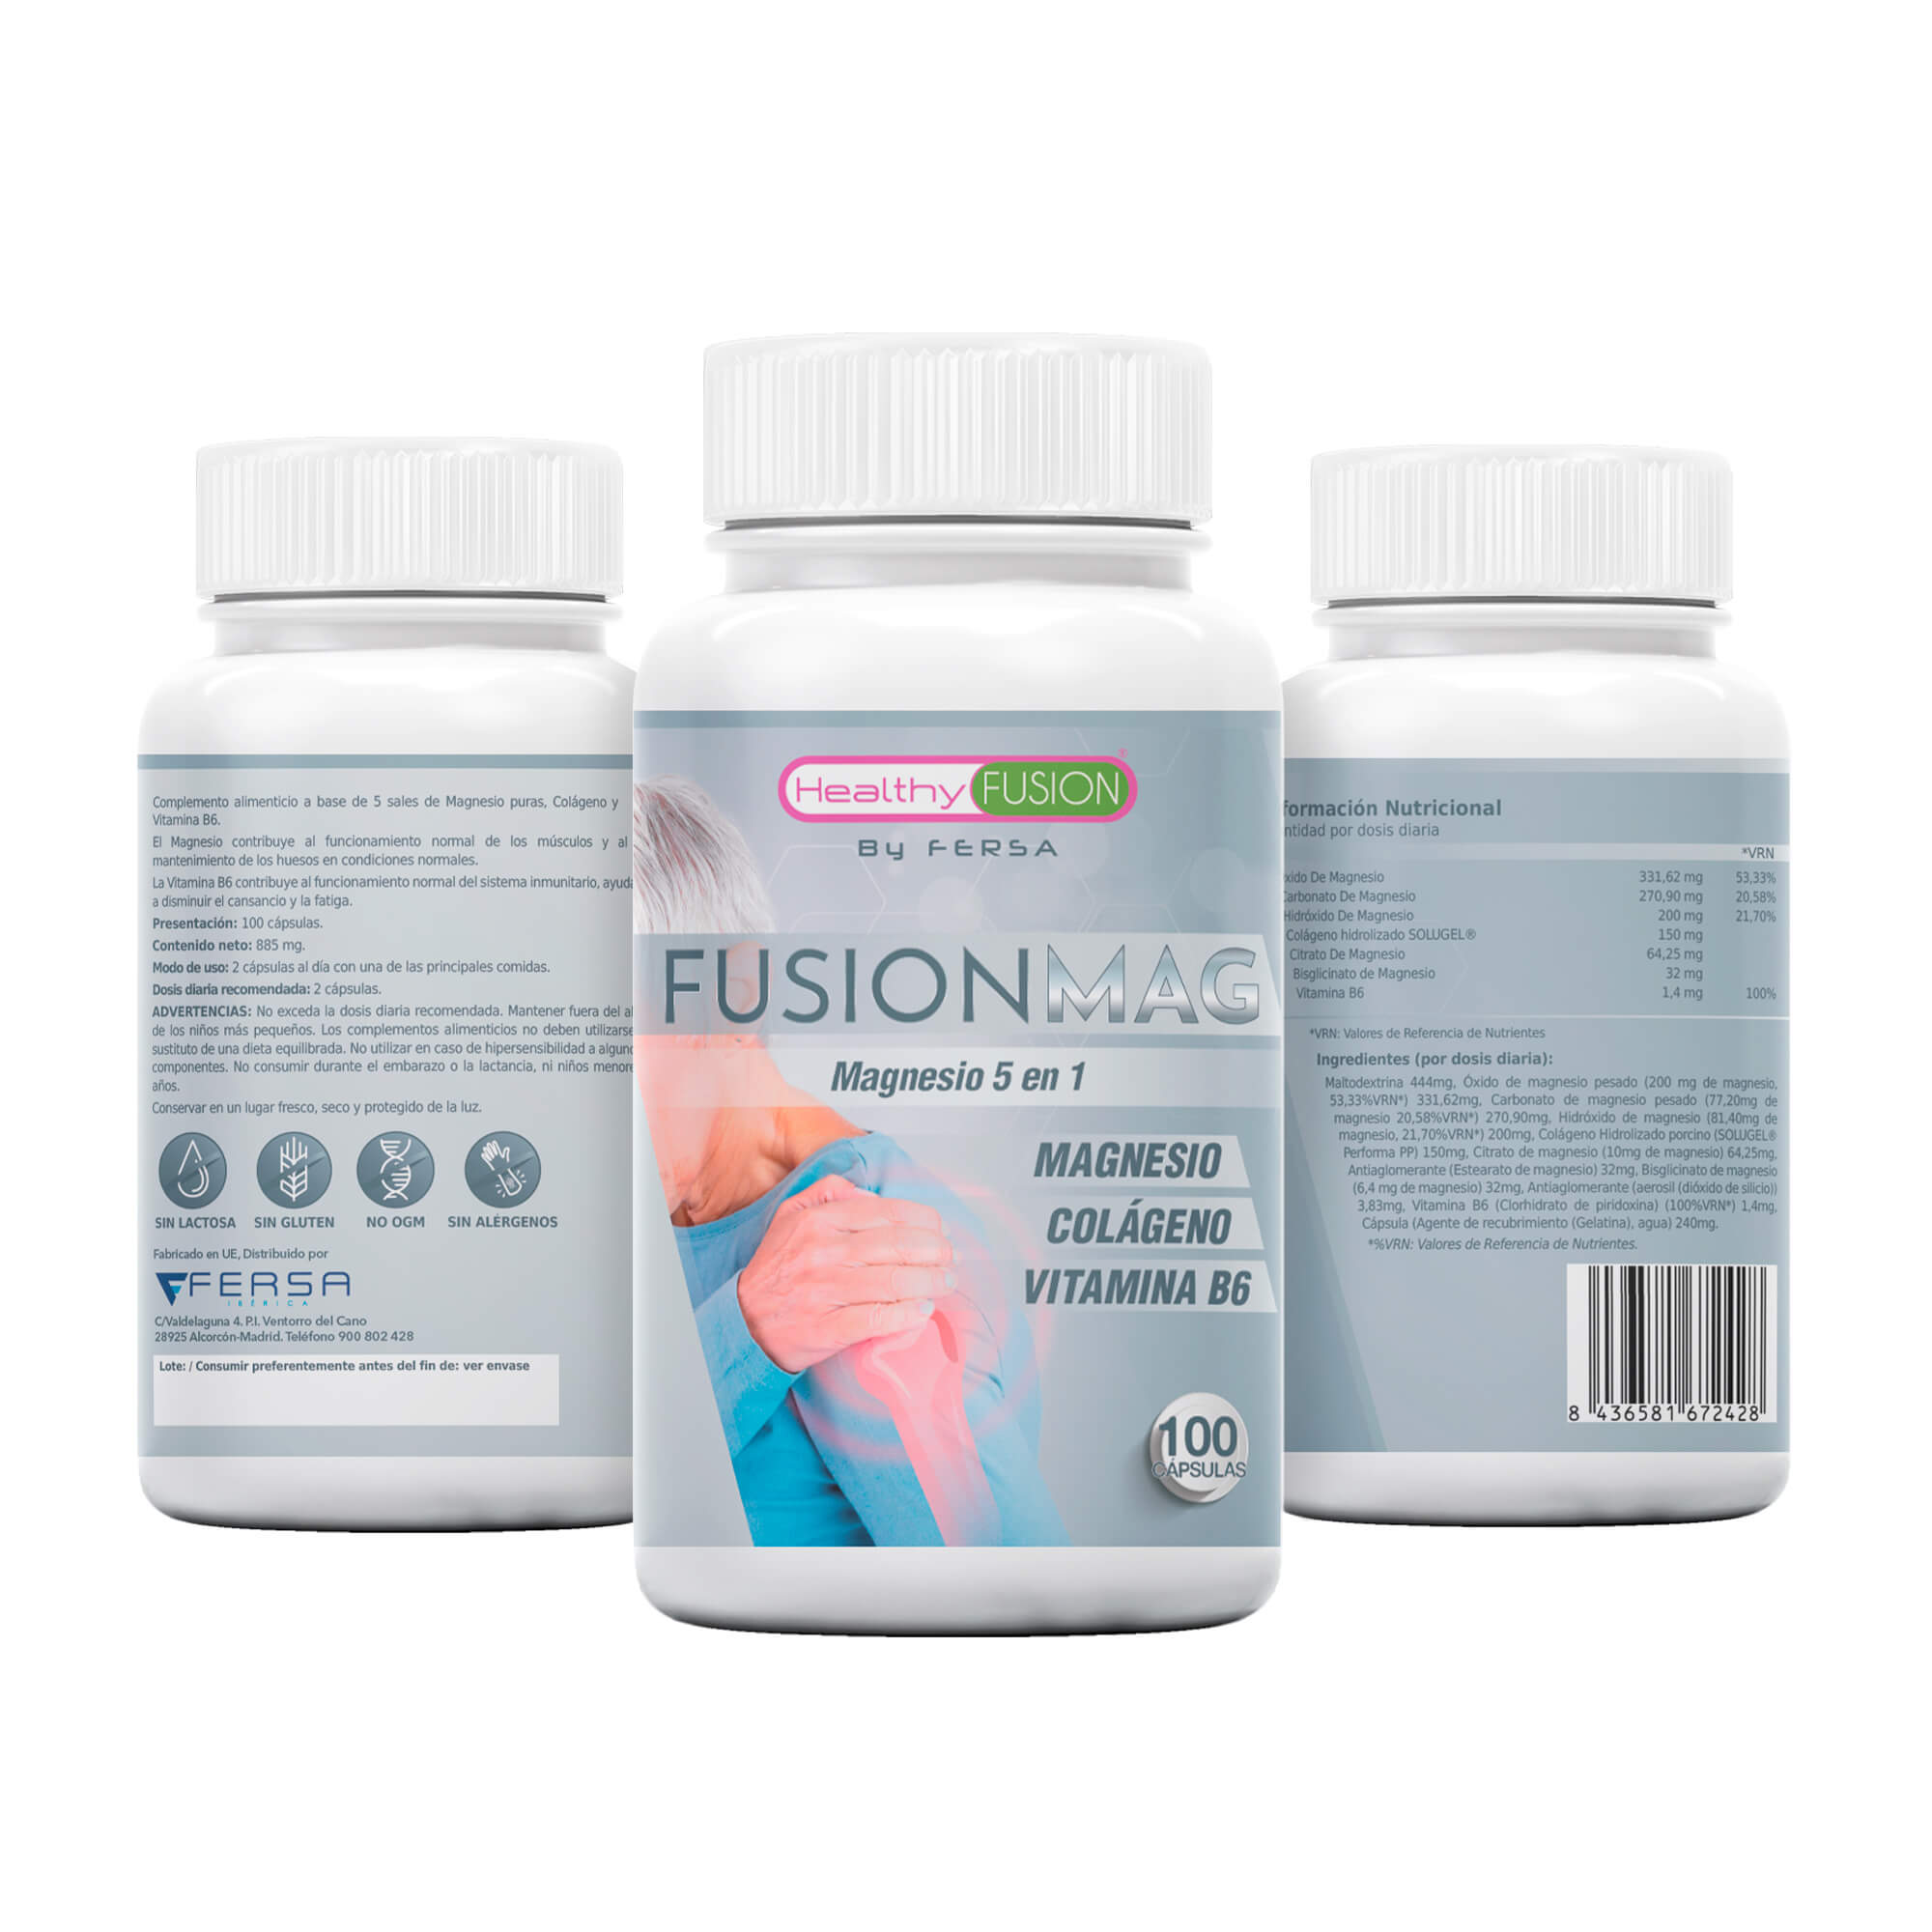 Healthy Fusion - Fusion Mag contenido